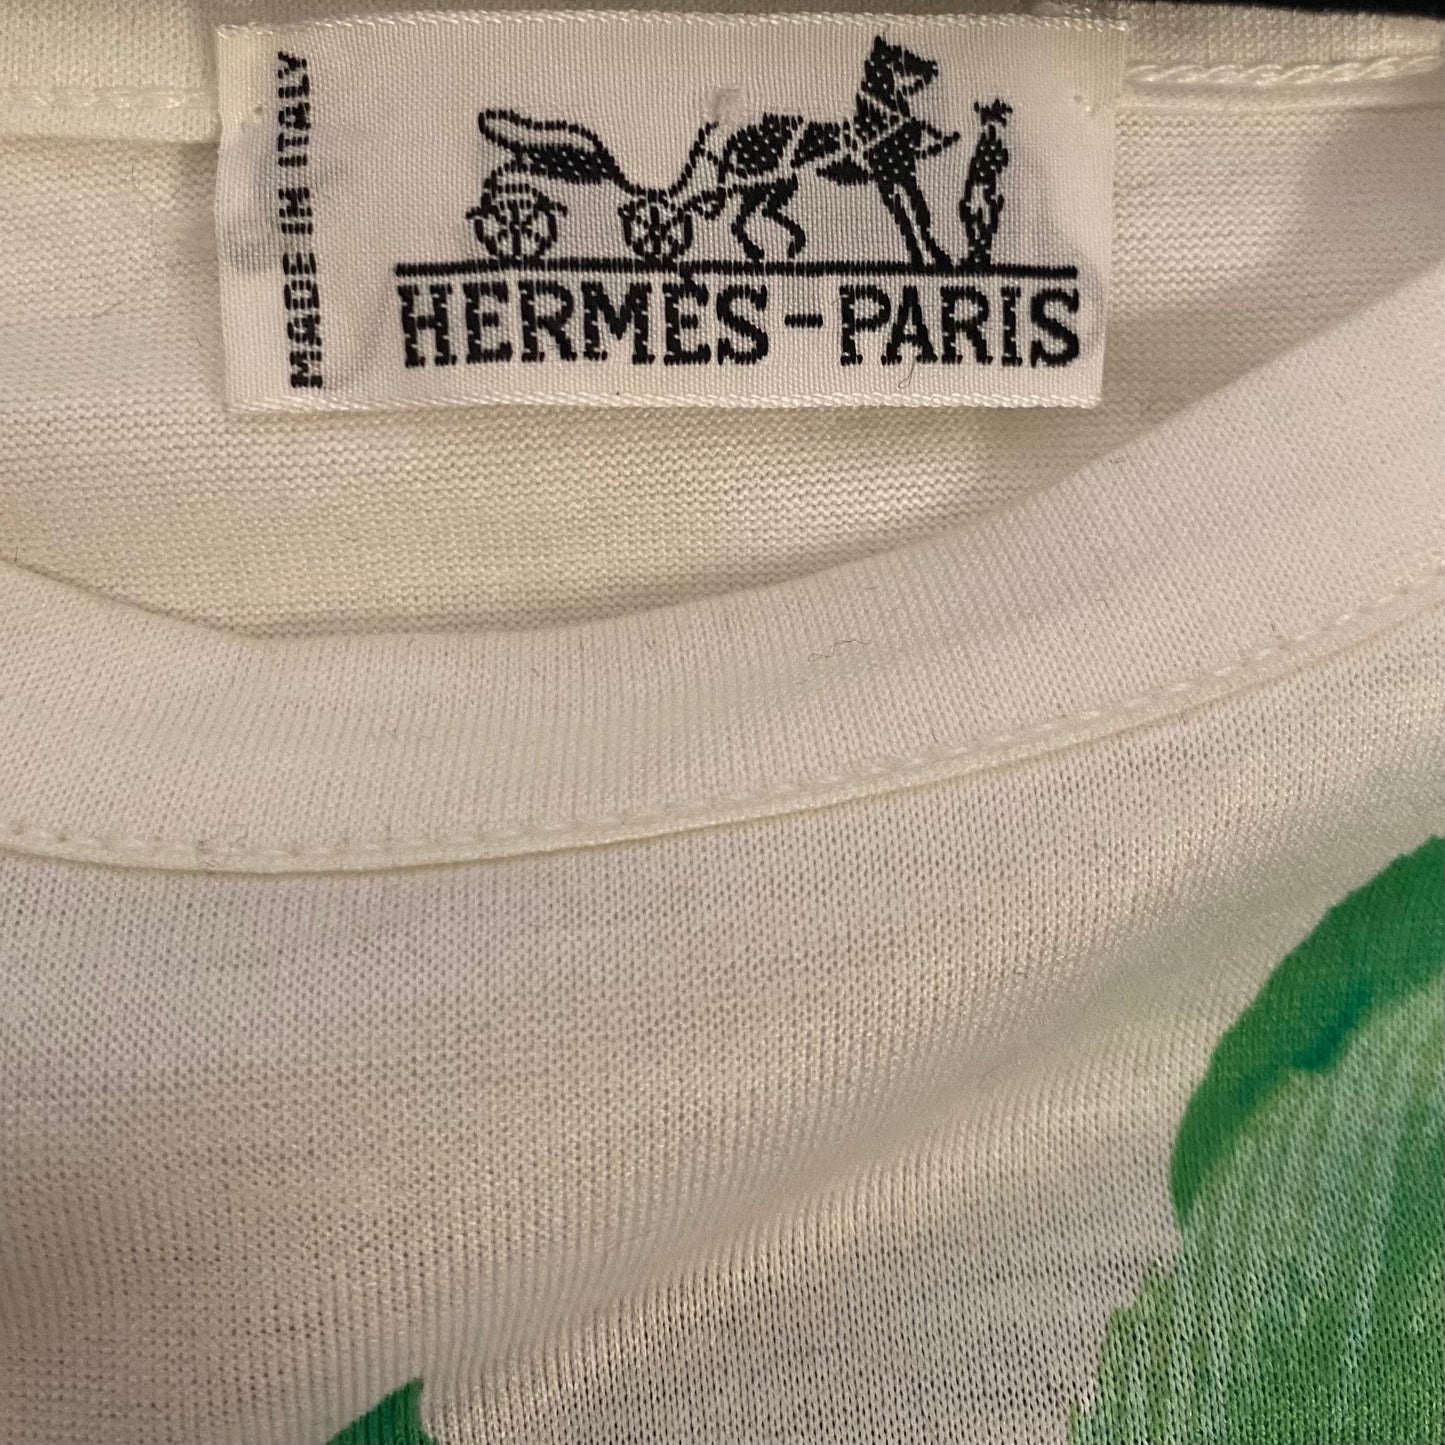 HERMES Tops vintage Lysis Paris pre-owned secondhand